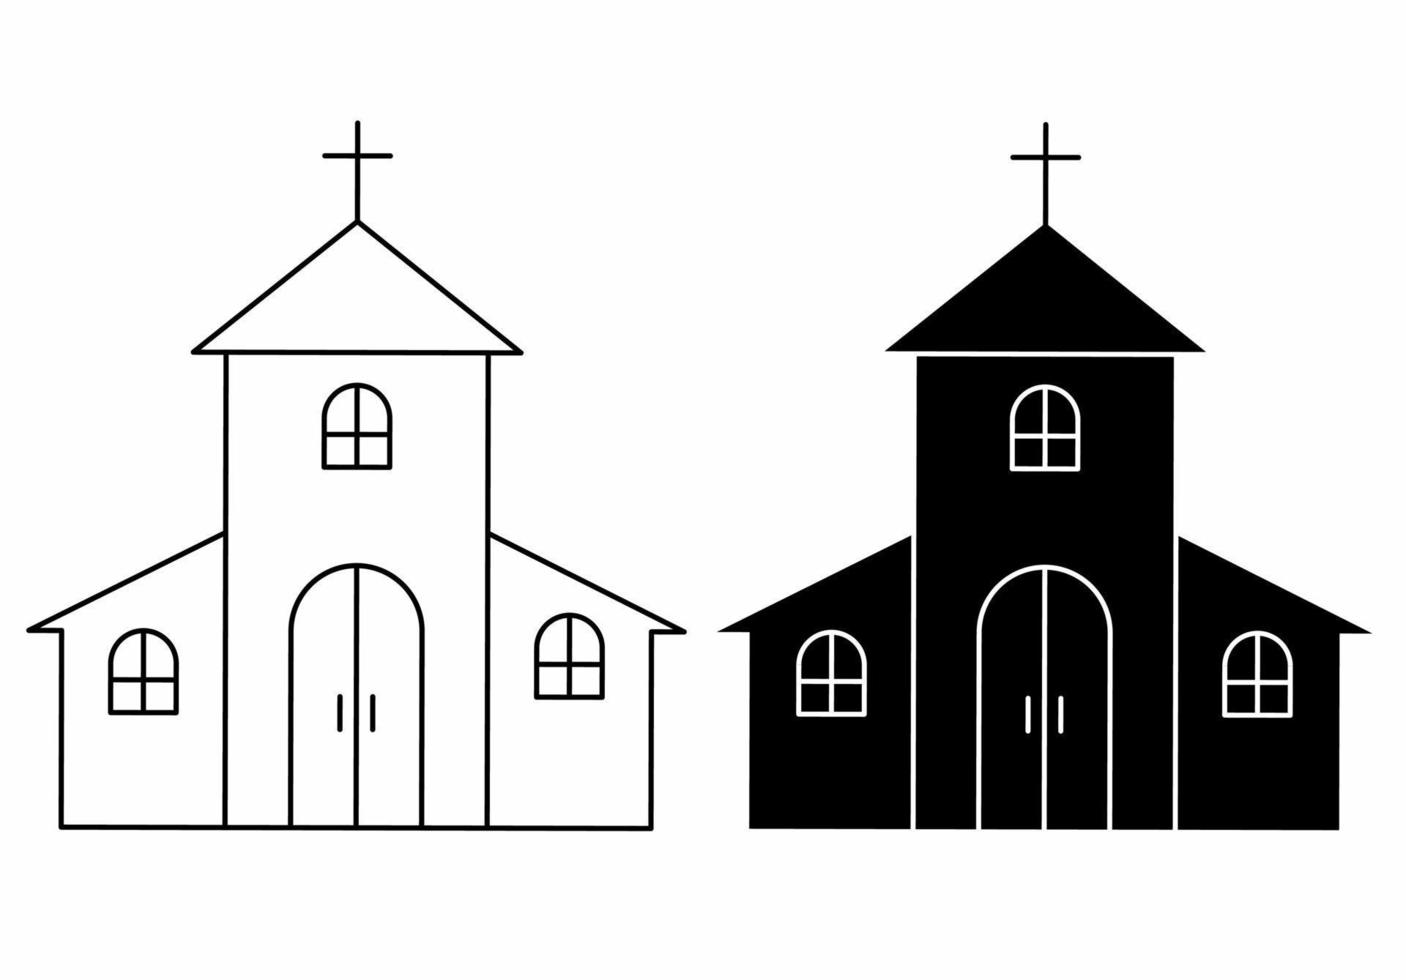 Kirchenikonensatz lokalisiert auf weißem Hintergrund vektor